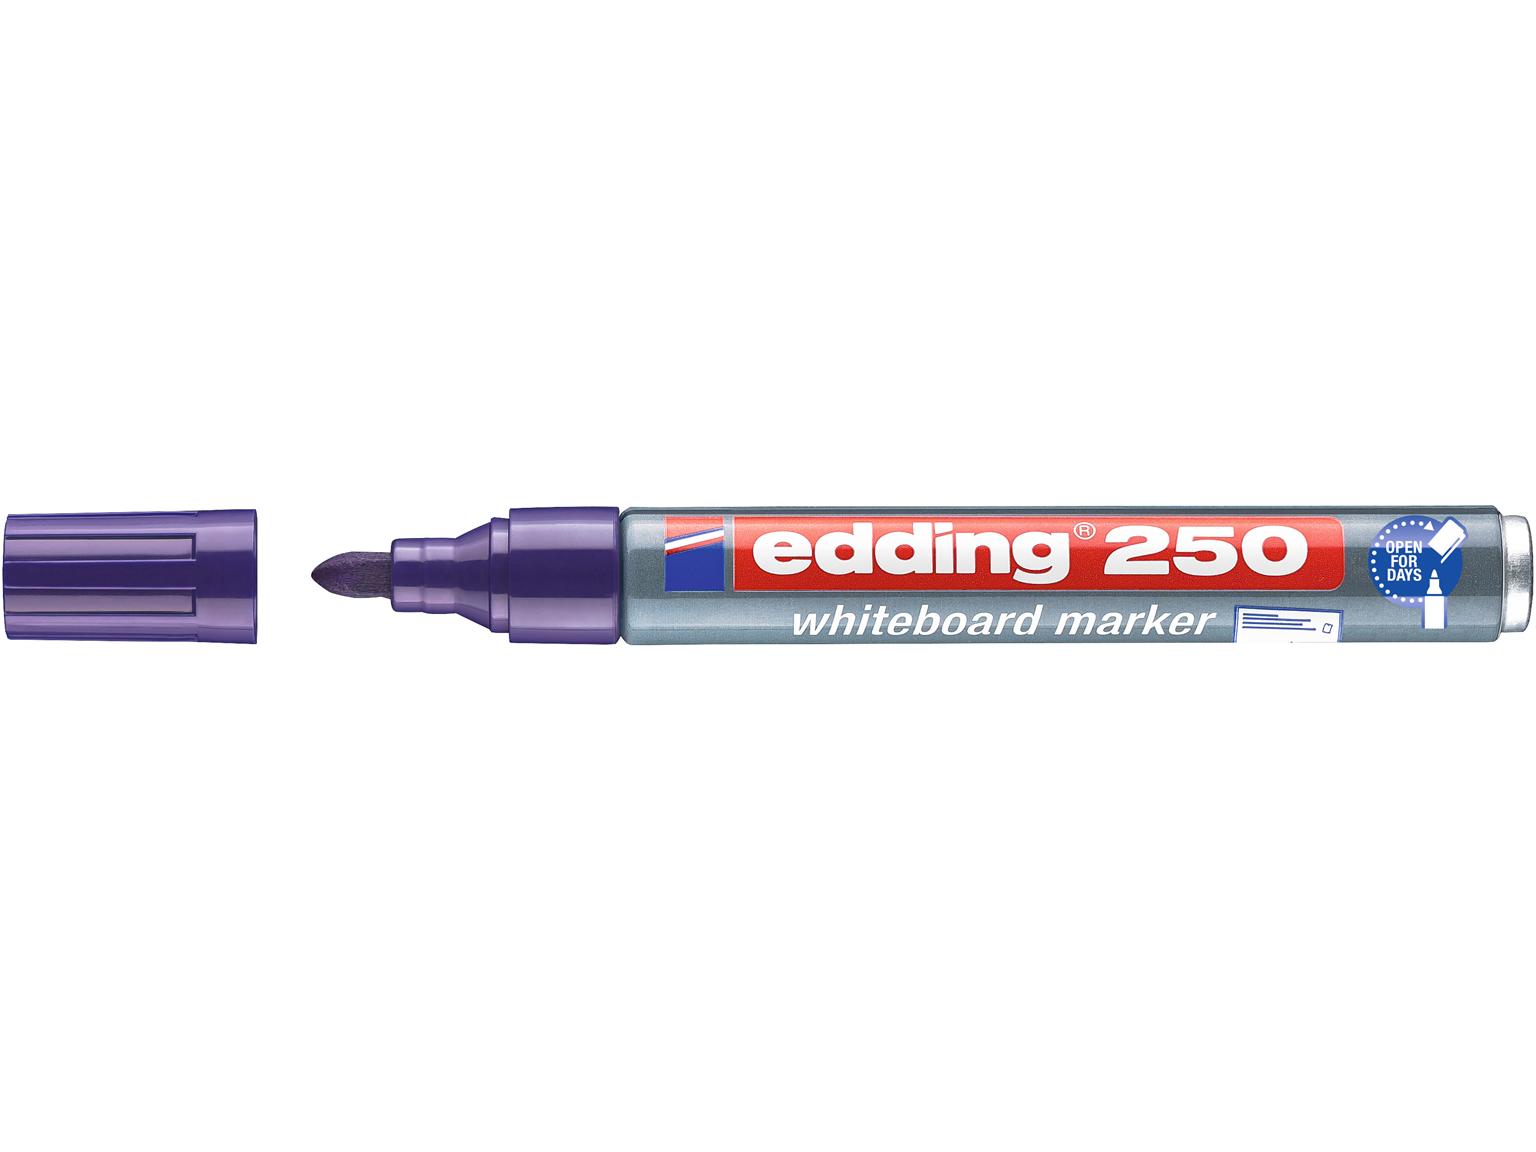 BOARDMARKER EDDING  edding Boardmarker 250 violett